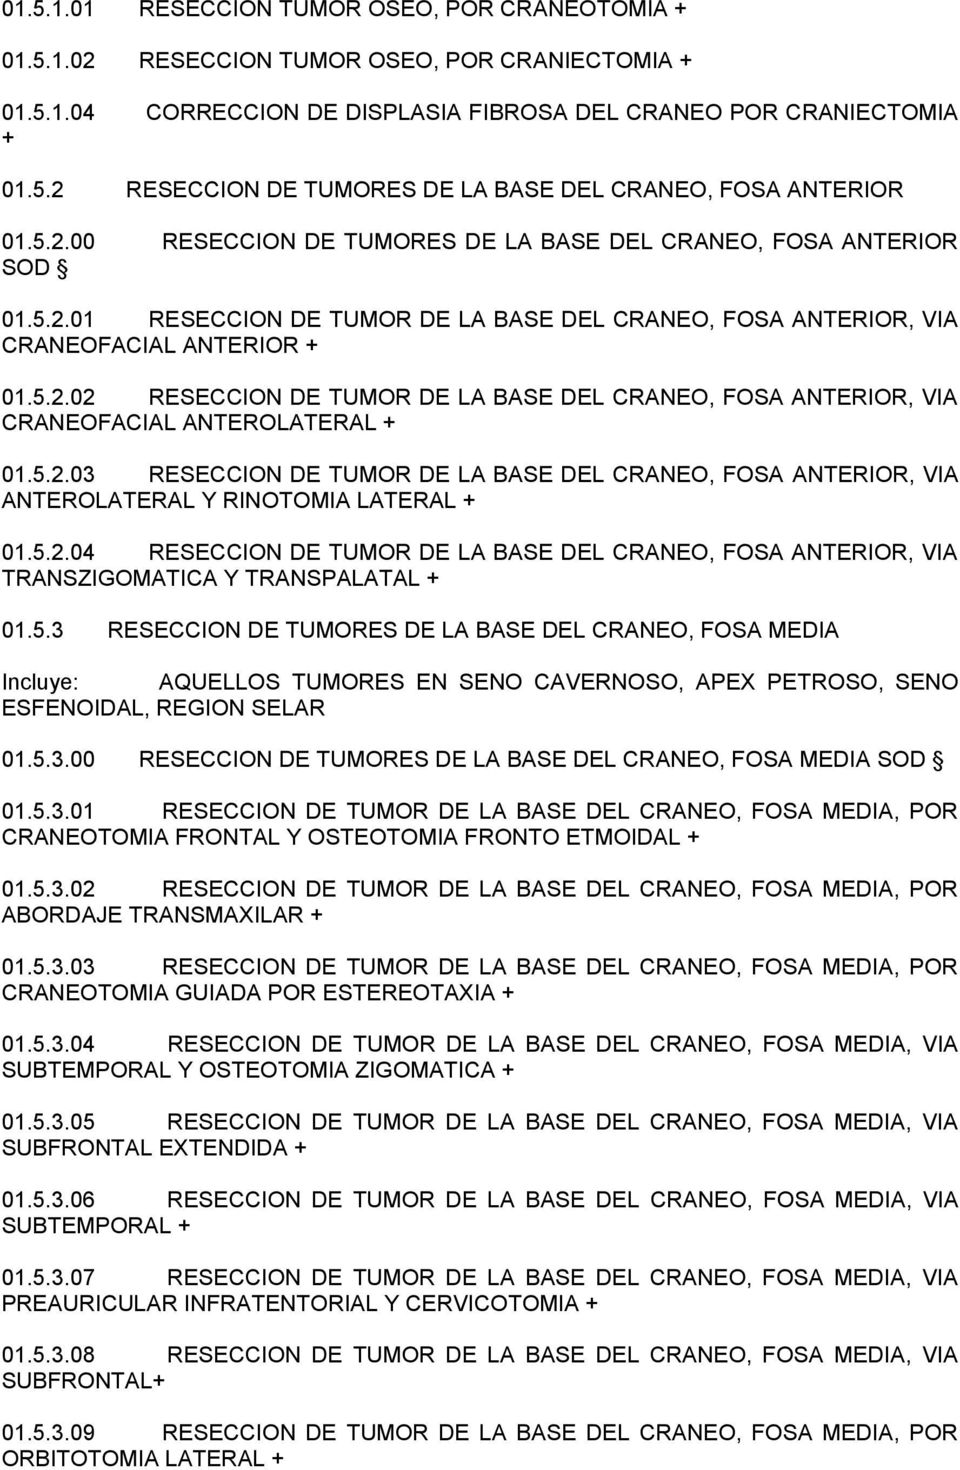 5.2.03 RESECCION DE TUMOR DE LA BASE DEL CRANEO, FOSA ANTERIOR, VIA ANTEROLATERAL Y RINOTOMIA LATERAL + 01.5.2.04 RESECCION DE TUMOR DE LA BASE DEL CRANEO, FOSA ANTERIOR, VIA TRANSZIGOMATICA Y TRANSPALATAL + 01.